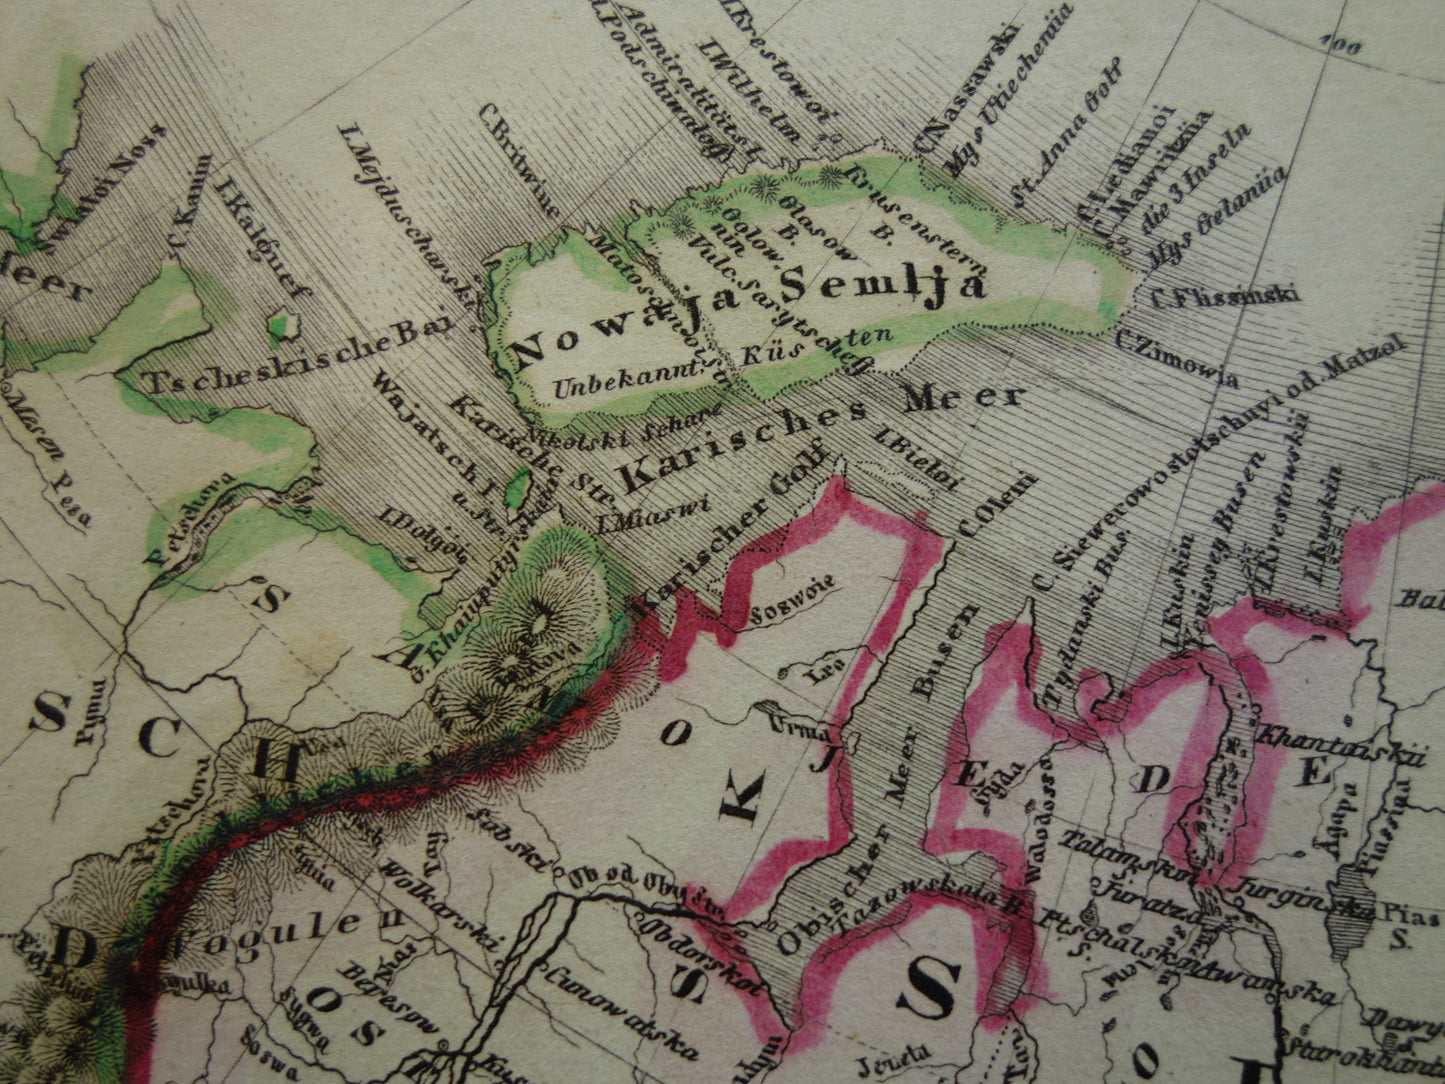 SIBERIE oude kaart van Russische Rijk in Azië antieke landkaart Siberië Nova Zembla Noordpool met jaartal - vintage kaarten